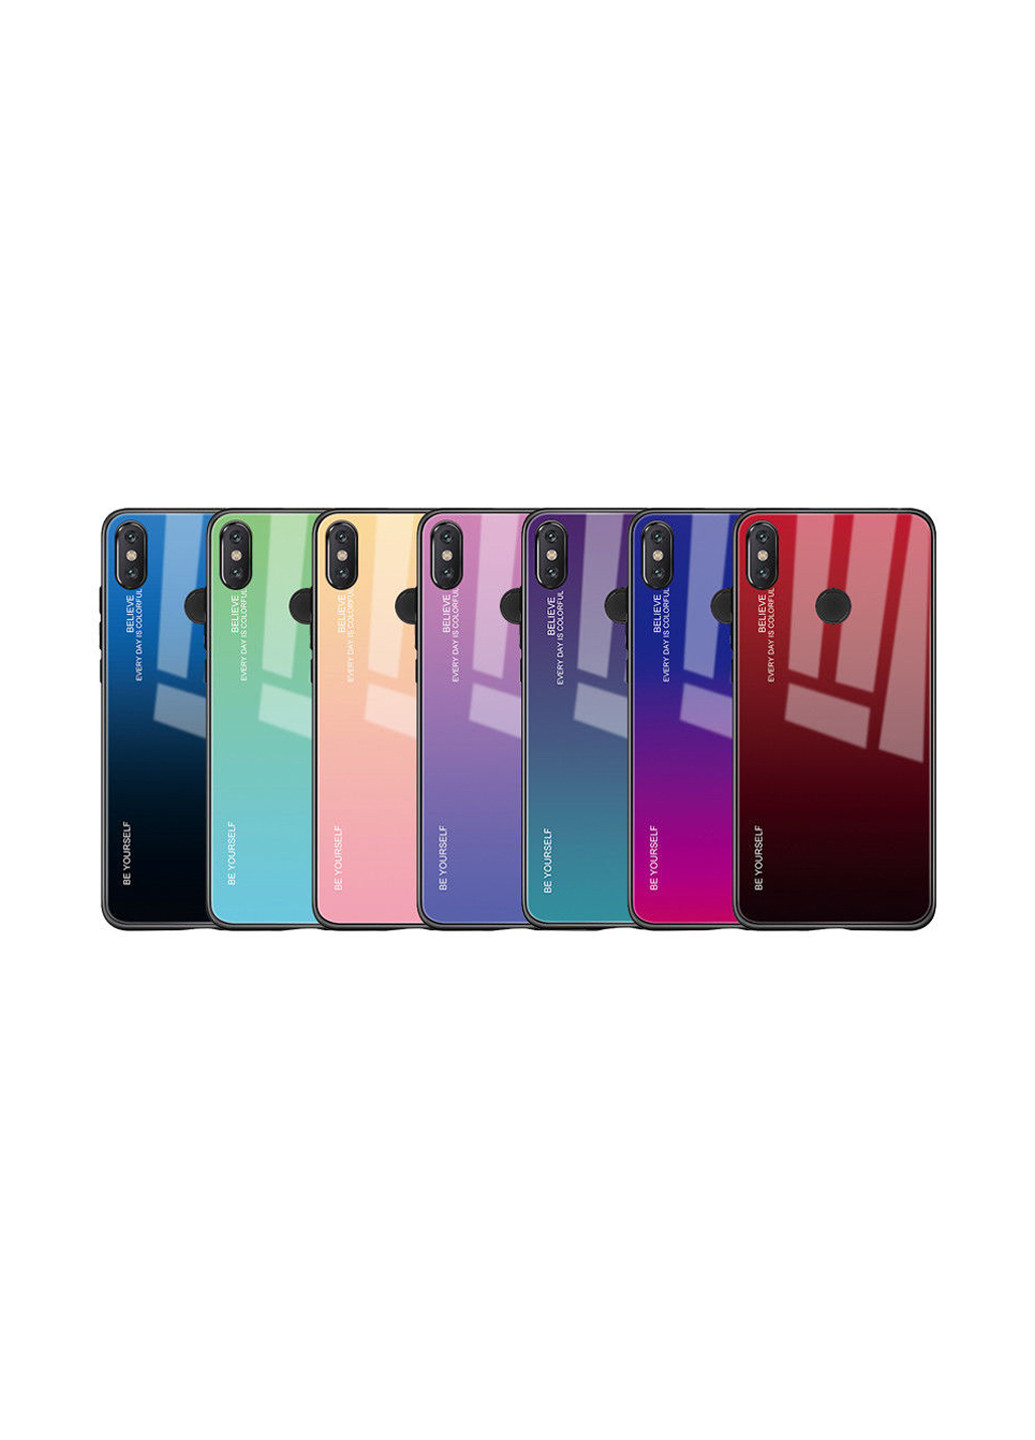 Панель Gradient Glass для Xiaomi Mi 8 Lite Pink-Purple (703573) BeCover gradient glass для xiaomi mi 8 lite pink-purple (703573) (147838026)